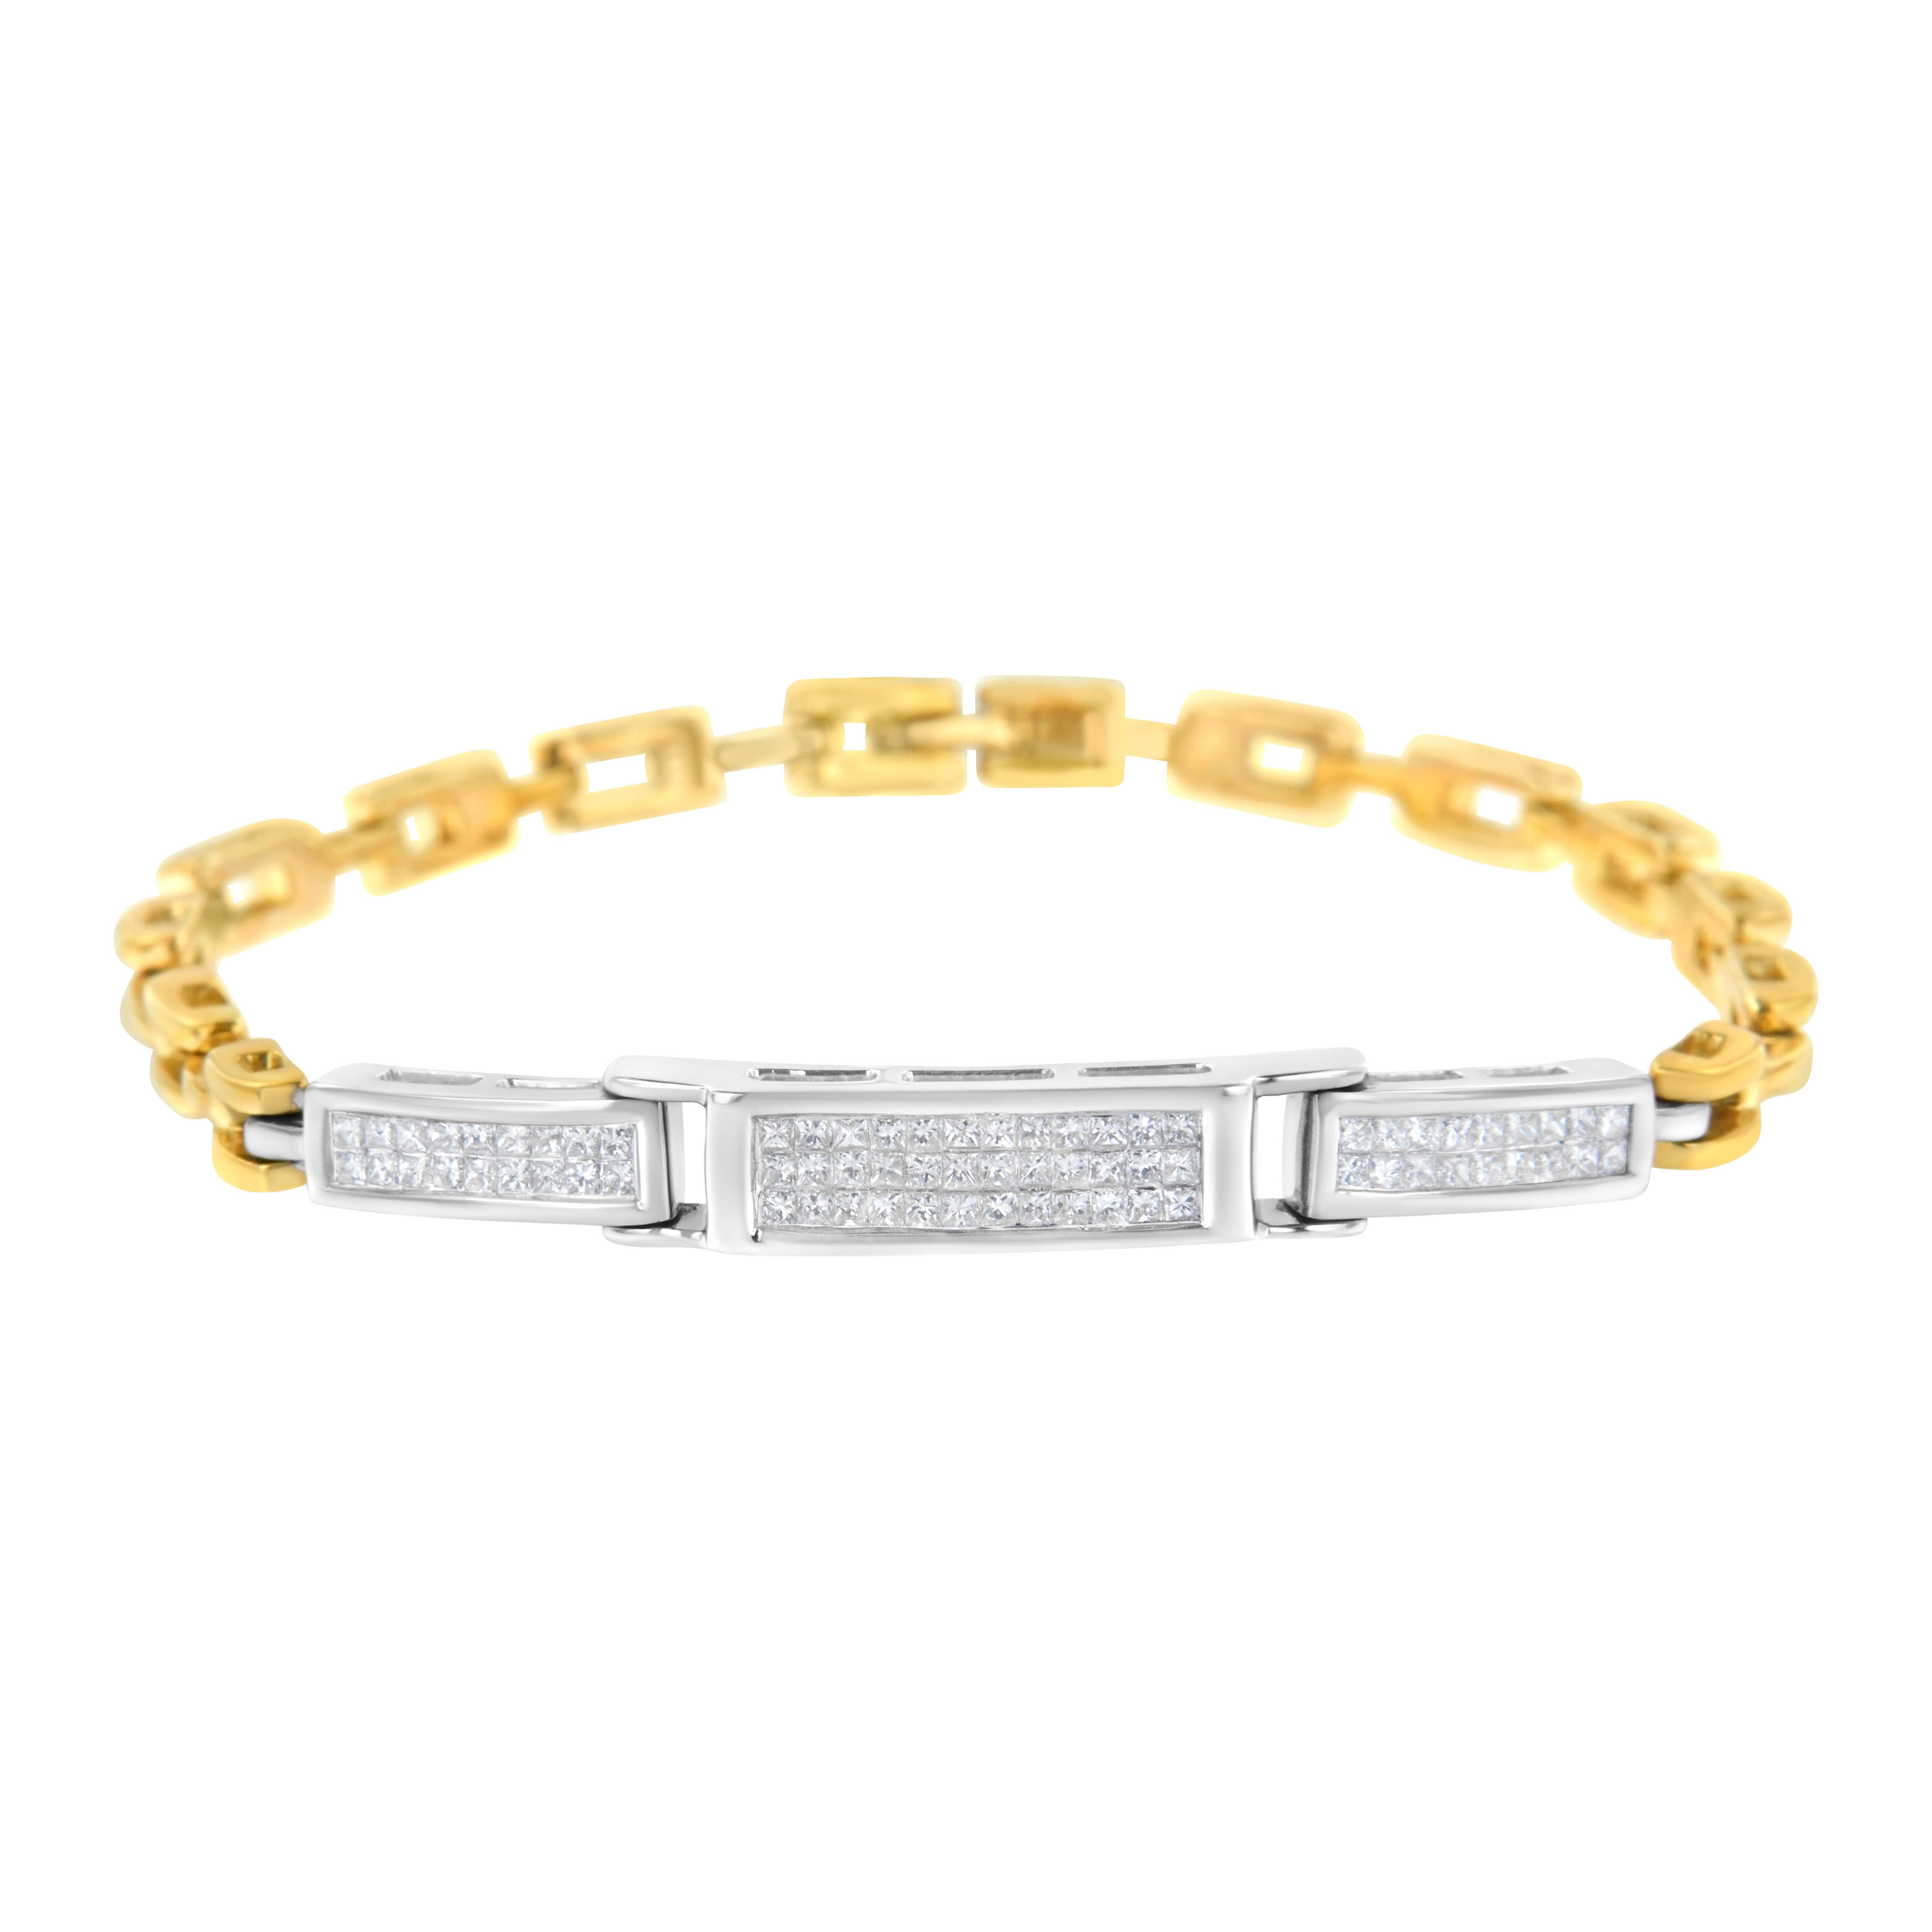 Démarquez-vous avec ce bracelet en or jaune et blanc 14k. Des formes rectangulaires en or blanc incrustées de rangées de diamants taille princesse constituent la pièce maîtresse de ce bracelet de tennis. Une chaîne simple en or jaune chaud complète